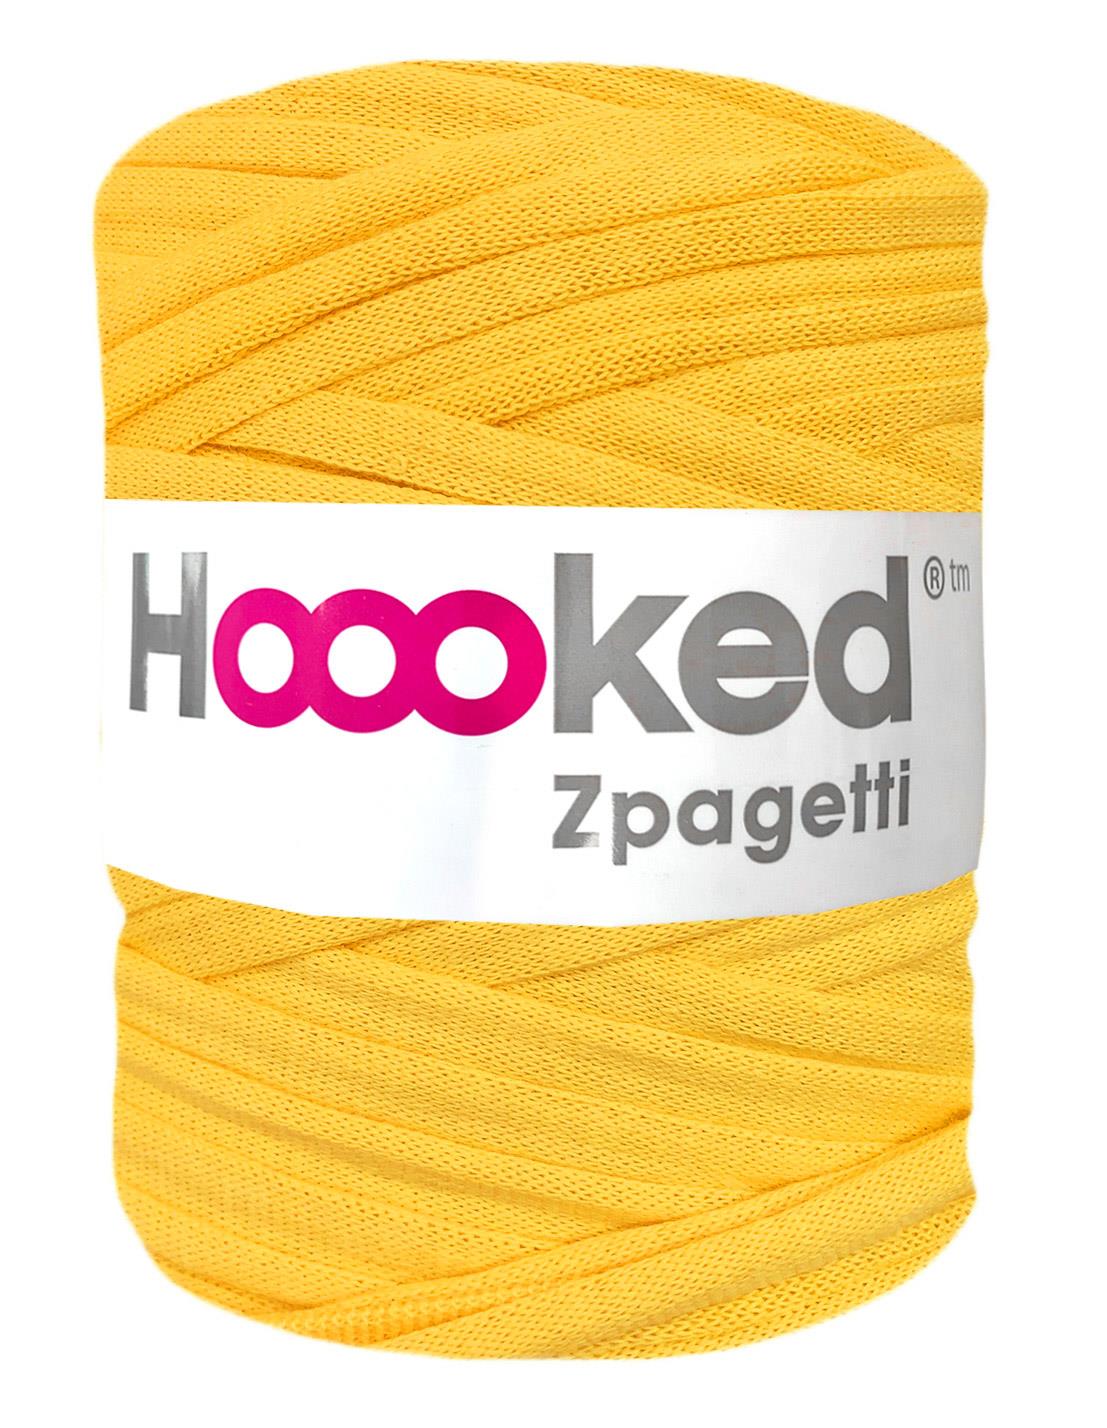 Sunrise yellow t-shirt yarn by Hoooked Zpagetti (100-120m)